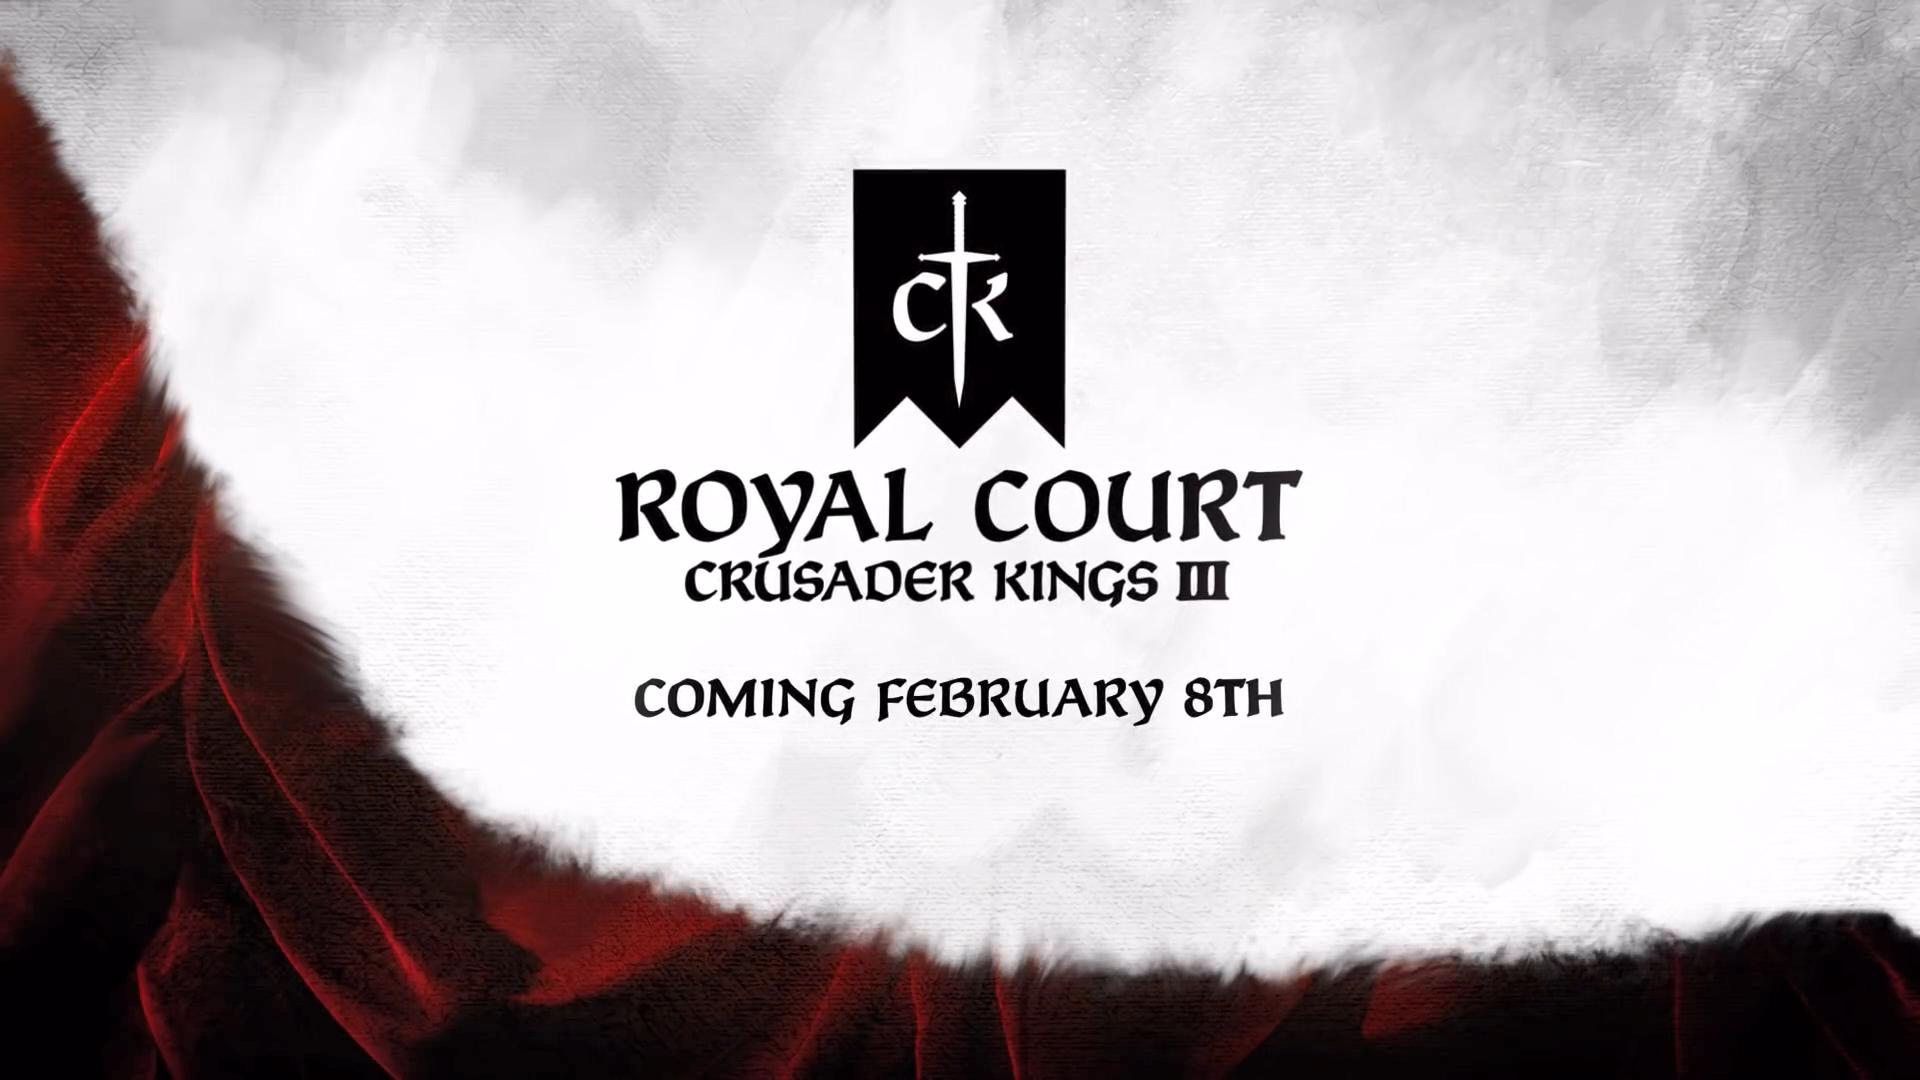 《十字军之王3》大型DLC“皇家宫廷”发售日期确定 2022年2月8日